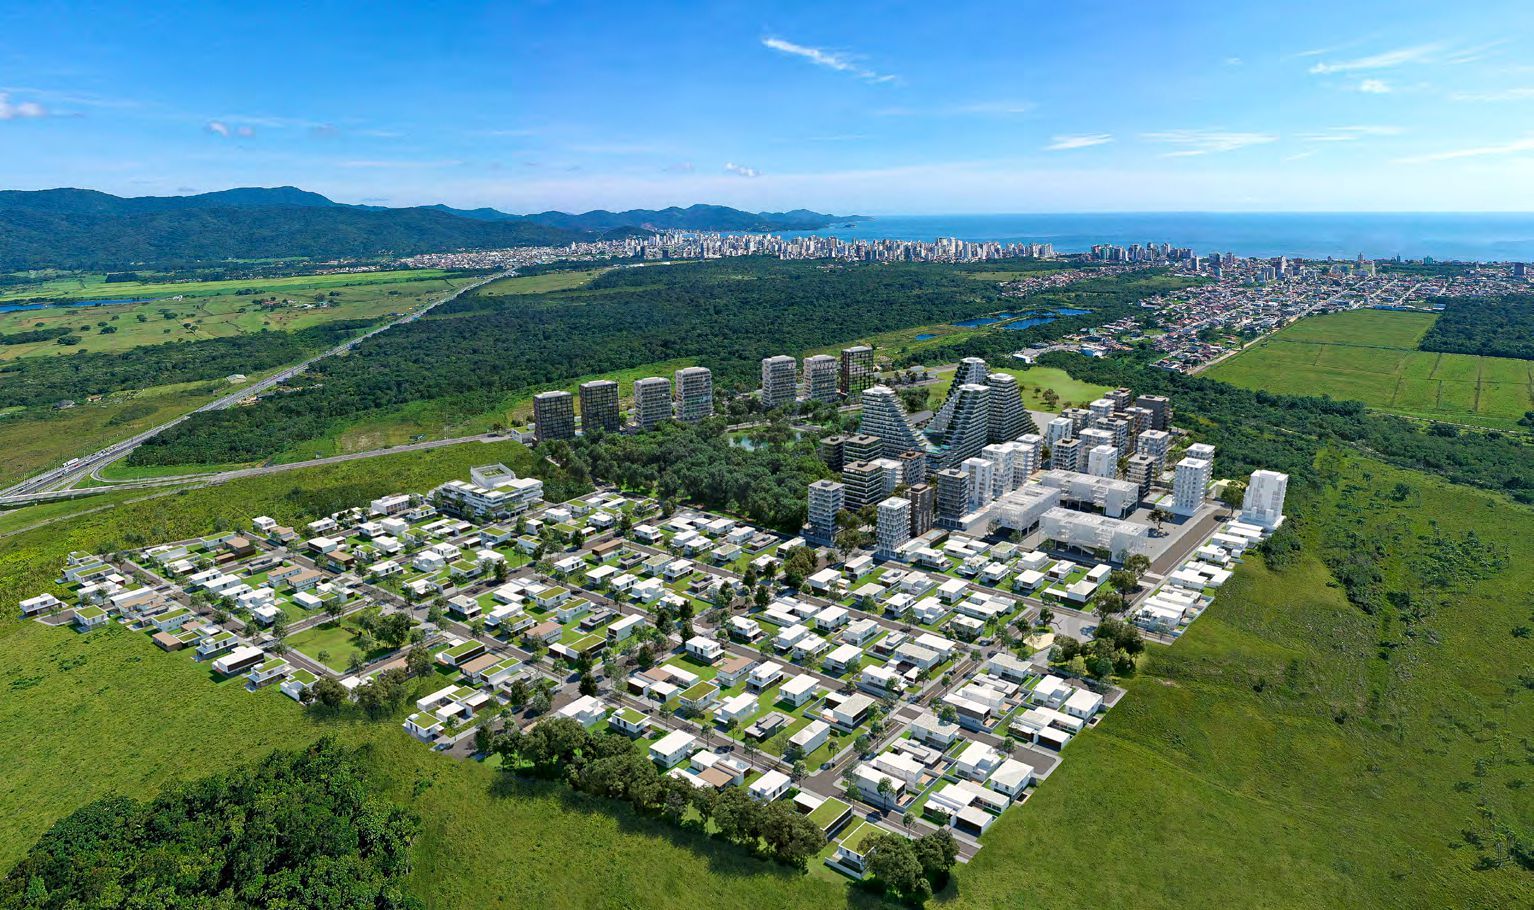  Vista aérea do empreendimento Viva Park, com diferentes configurações de quarteirões entre área residencial e corporativa.